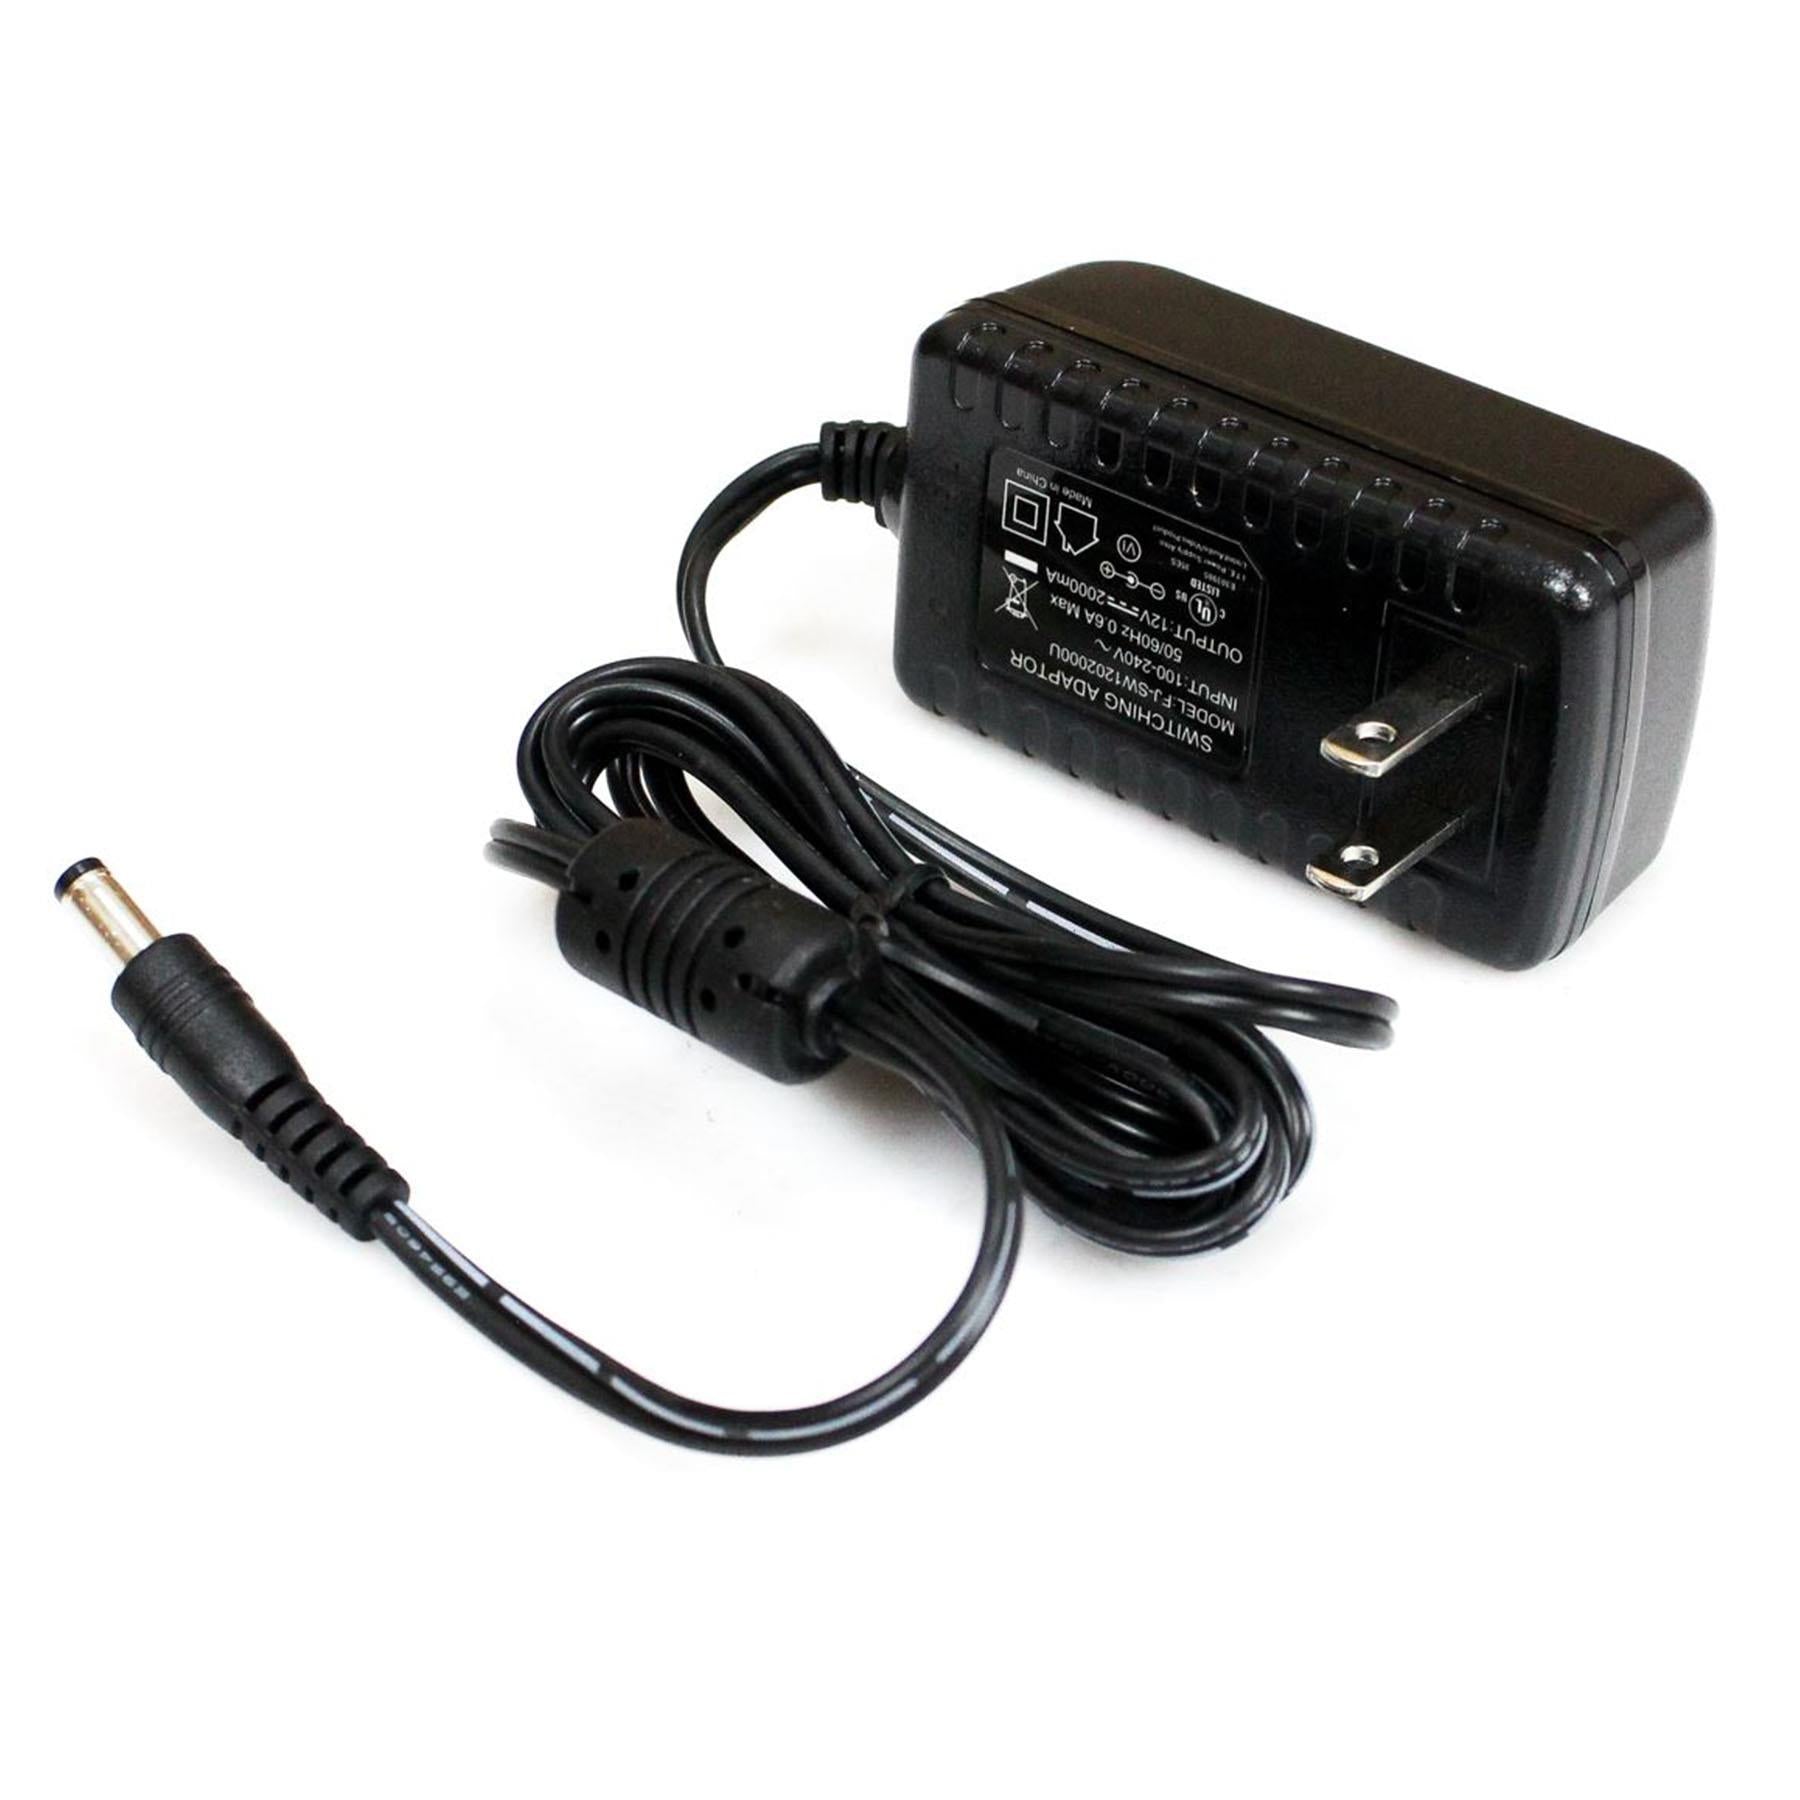 Alesis Strike Kit / Strike Pro Kit Power Supply Adapter - PSU Replacem - Pixel Audio